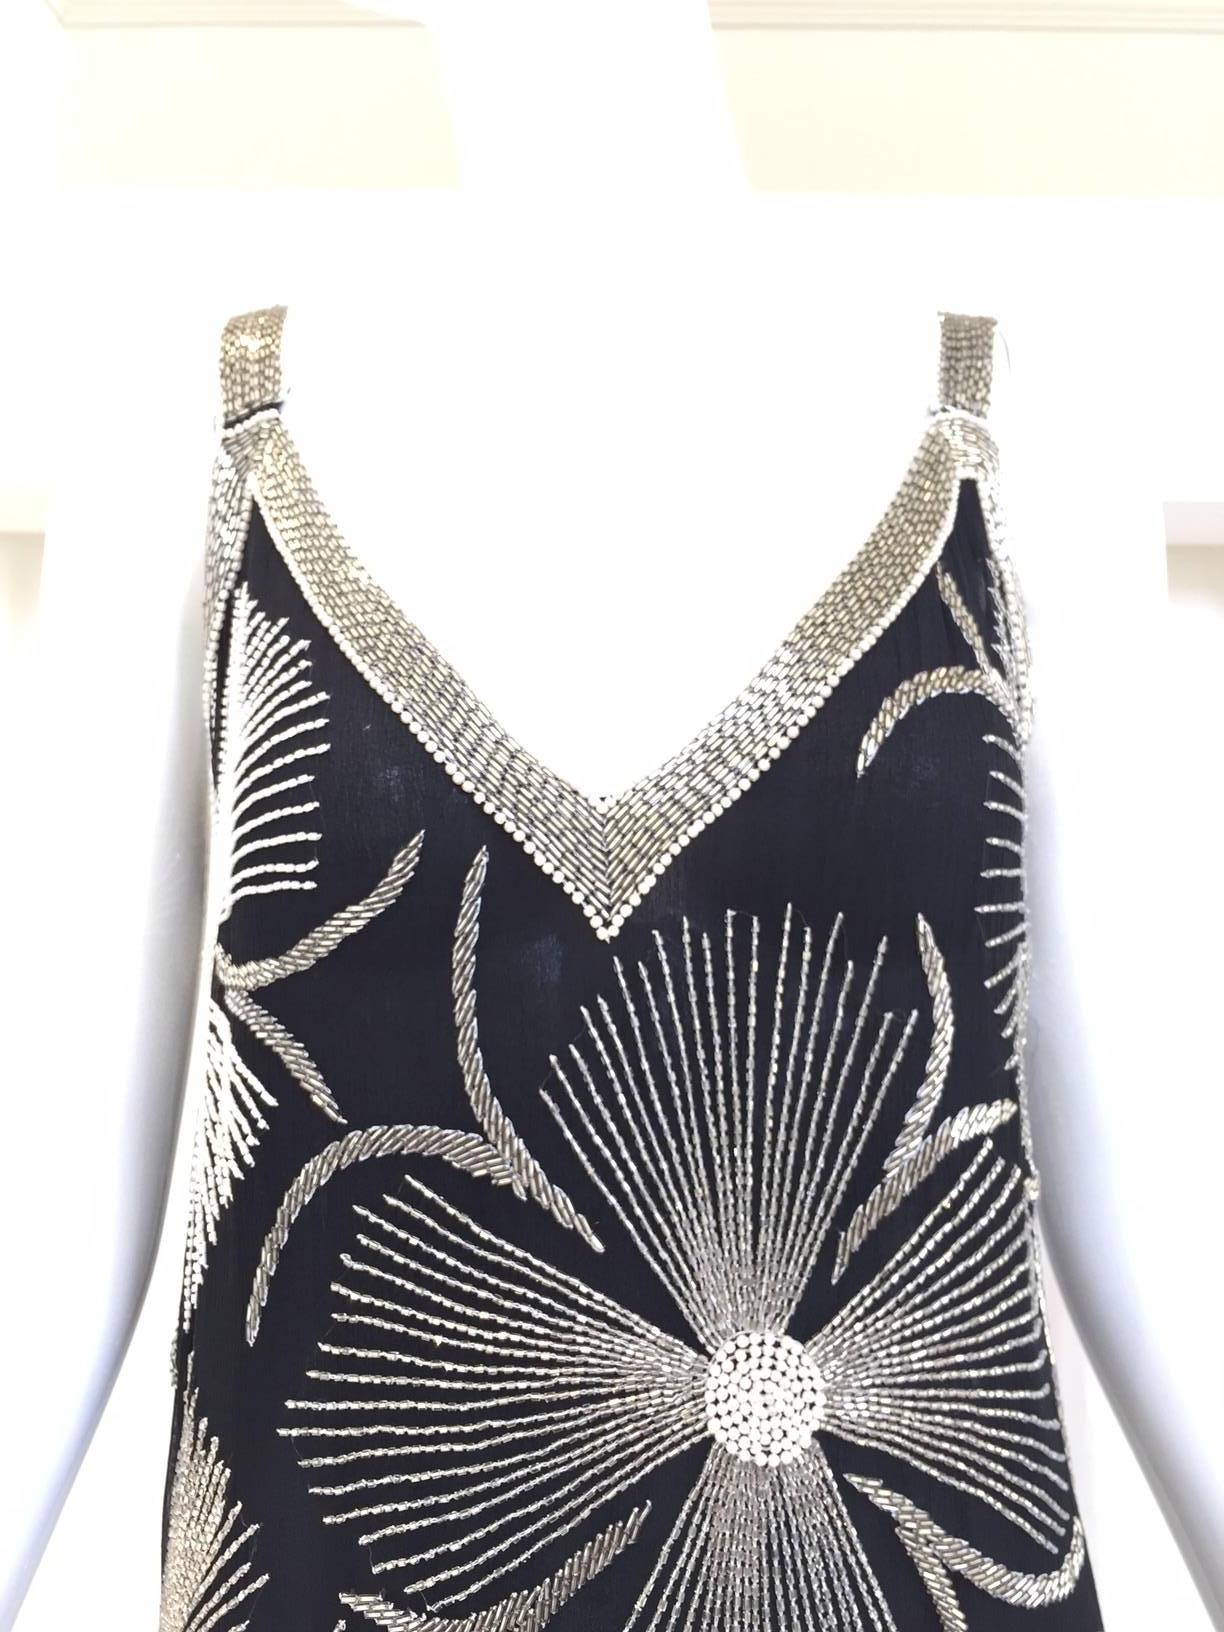 robe à bretelles spaghetti des années 1980, style florale noire et blanche avec perles argentées. 
Robe en excellent état. Convient aux tailles Small - Medium ( 2/4/6)
Poitrine : 36